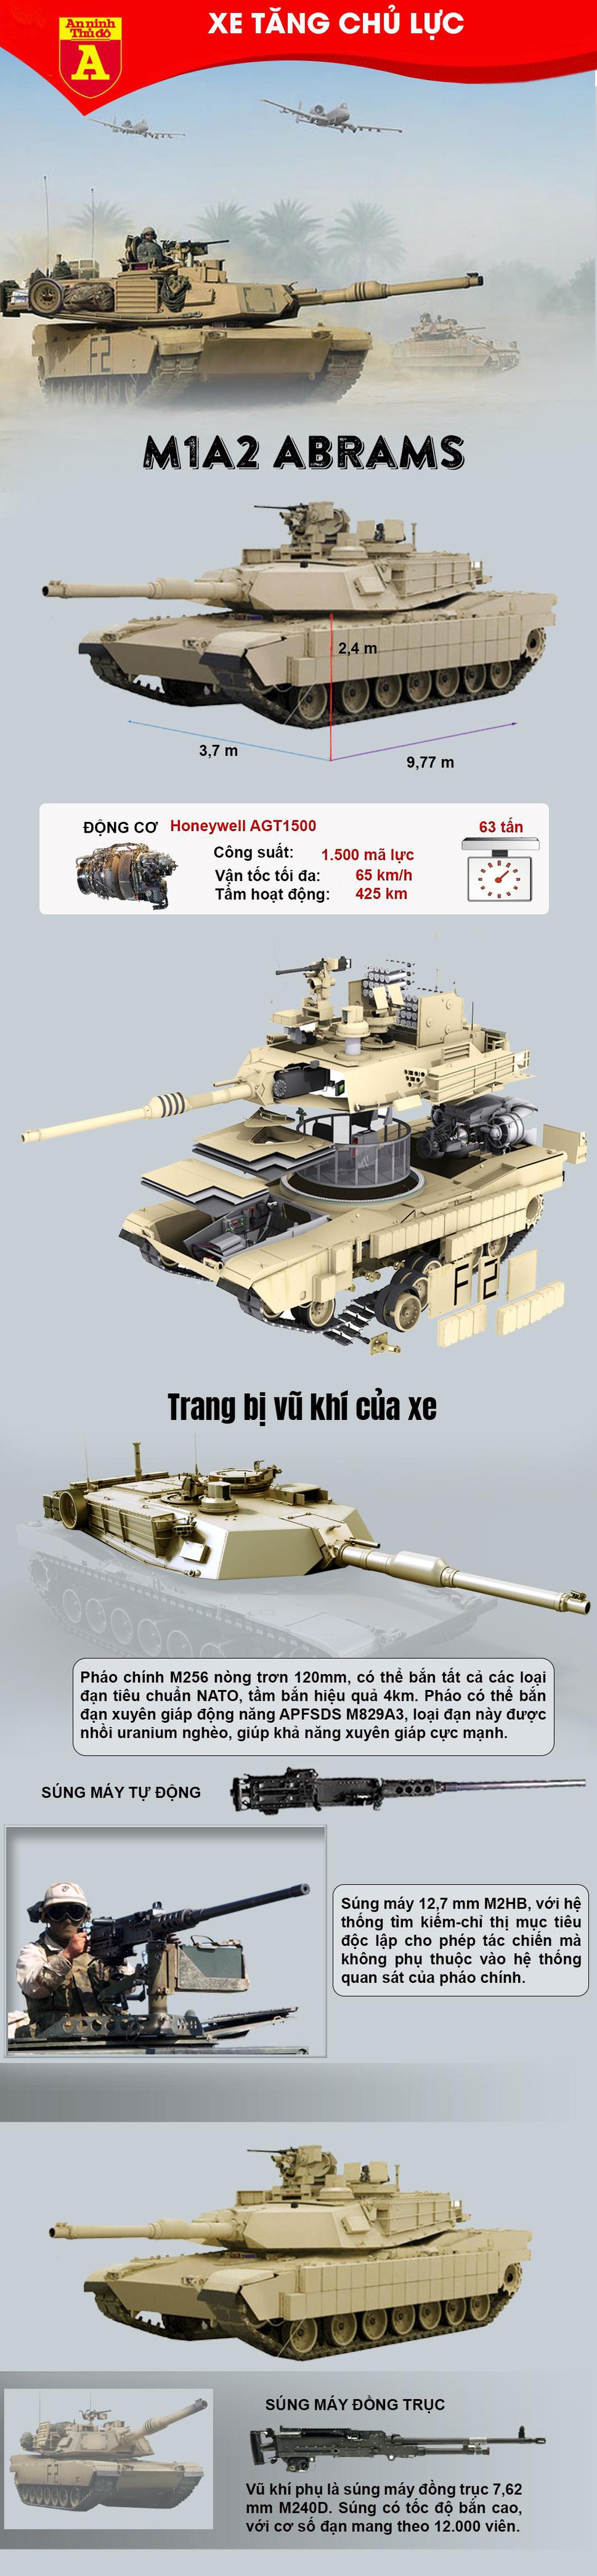 Xe tăng chủ lực M1A2 Abrams của quân đội Mỹ - Ảnh 1